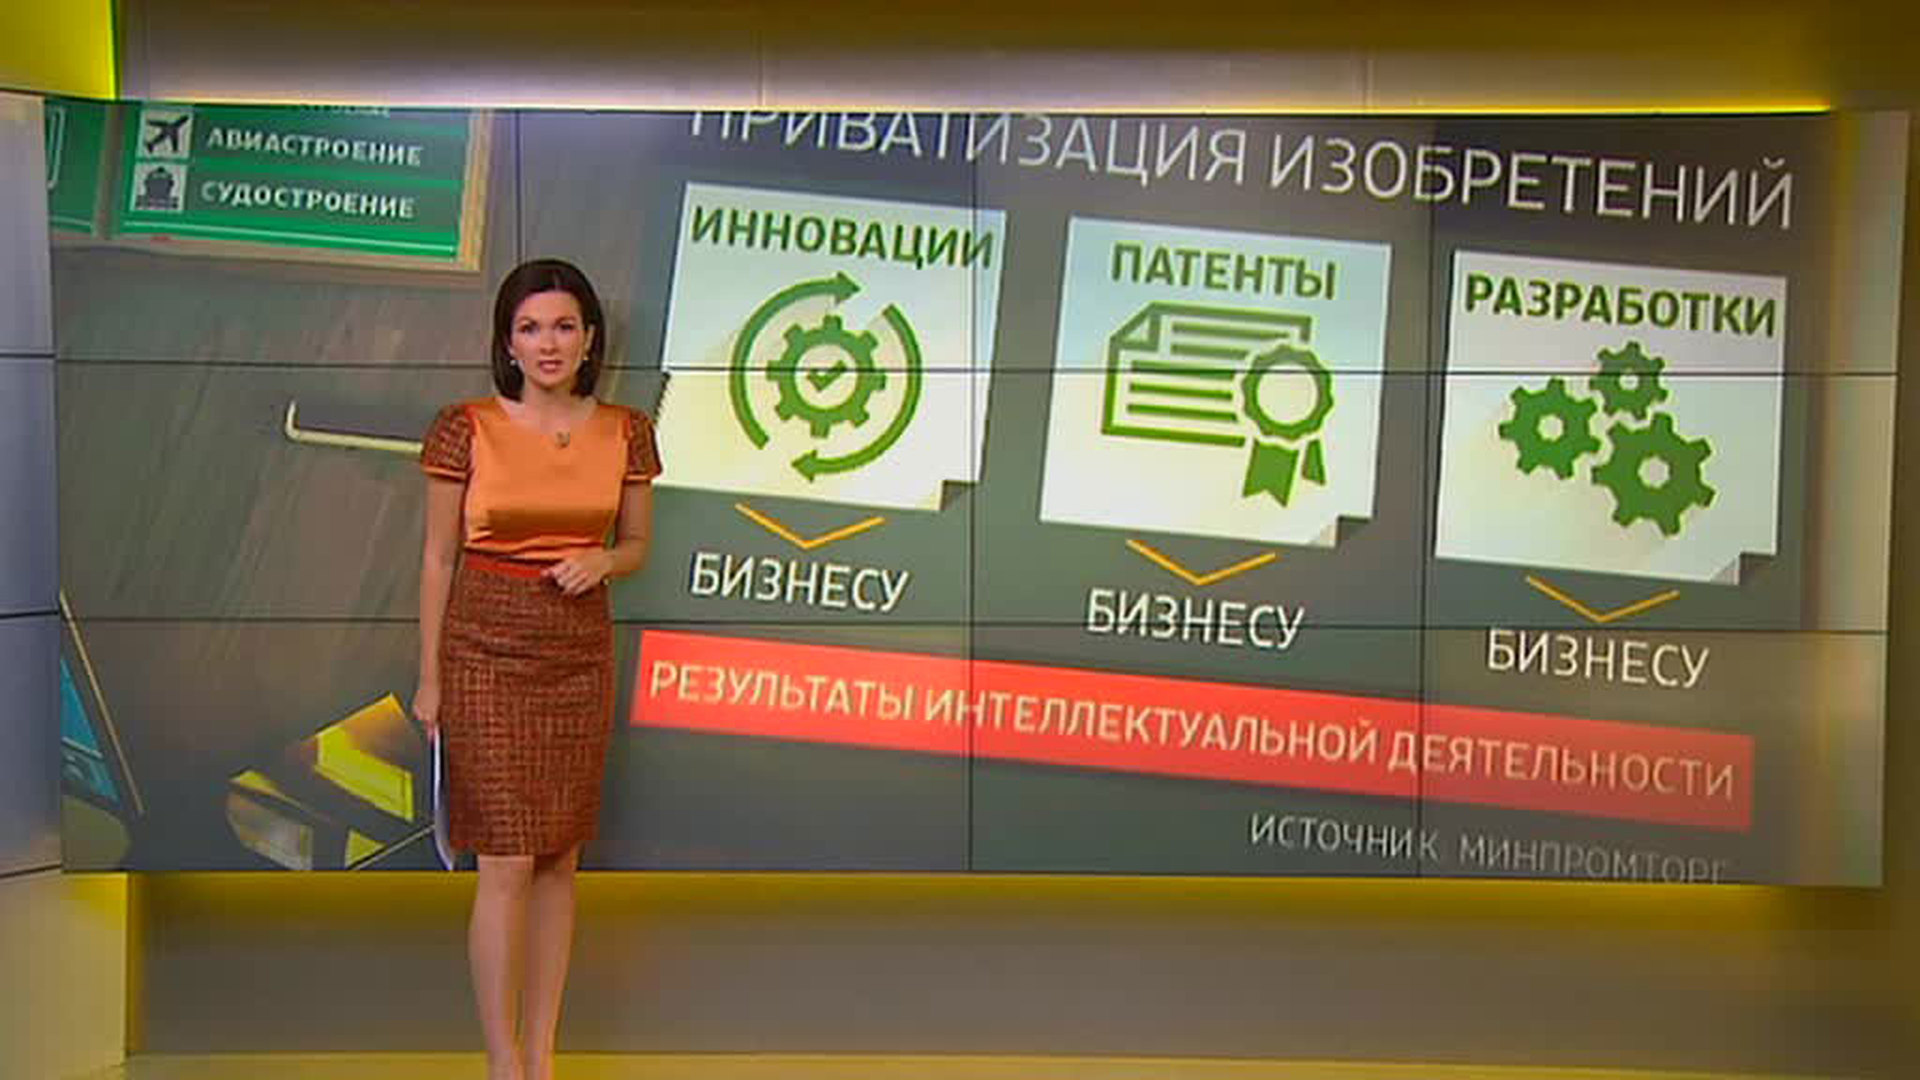 Телеведущая россия 24 наталья литовко фото